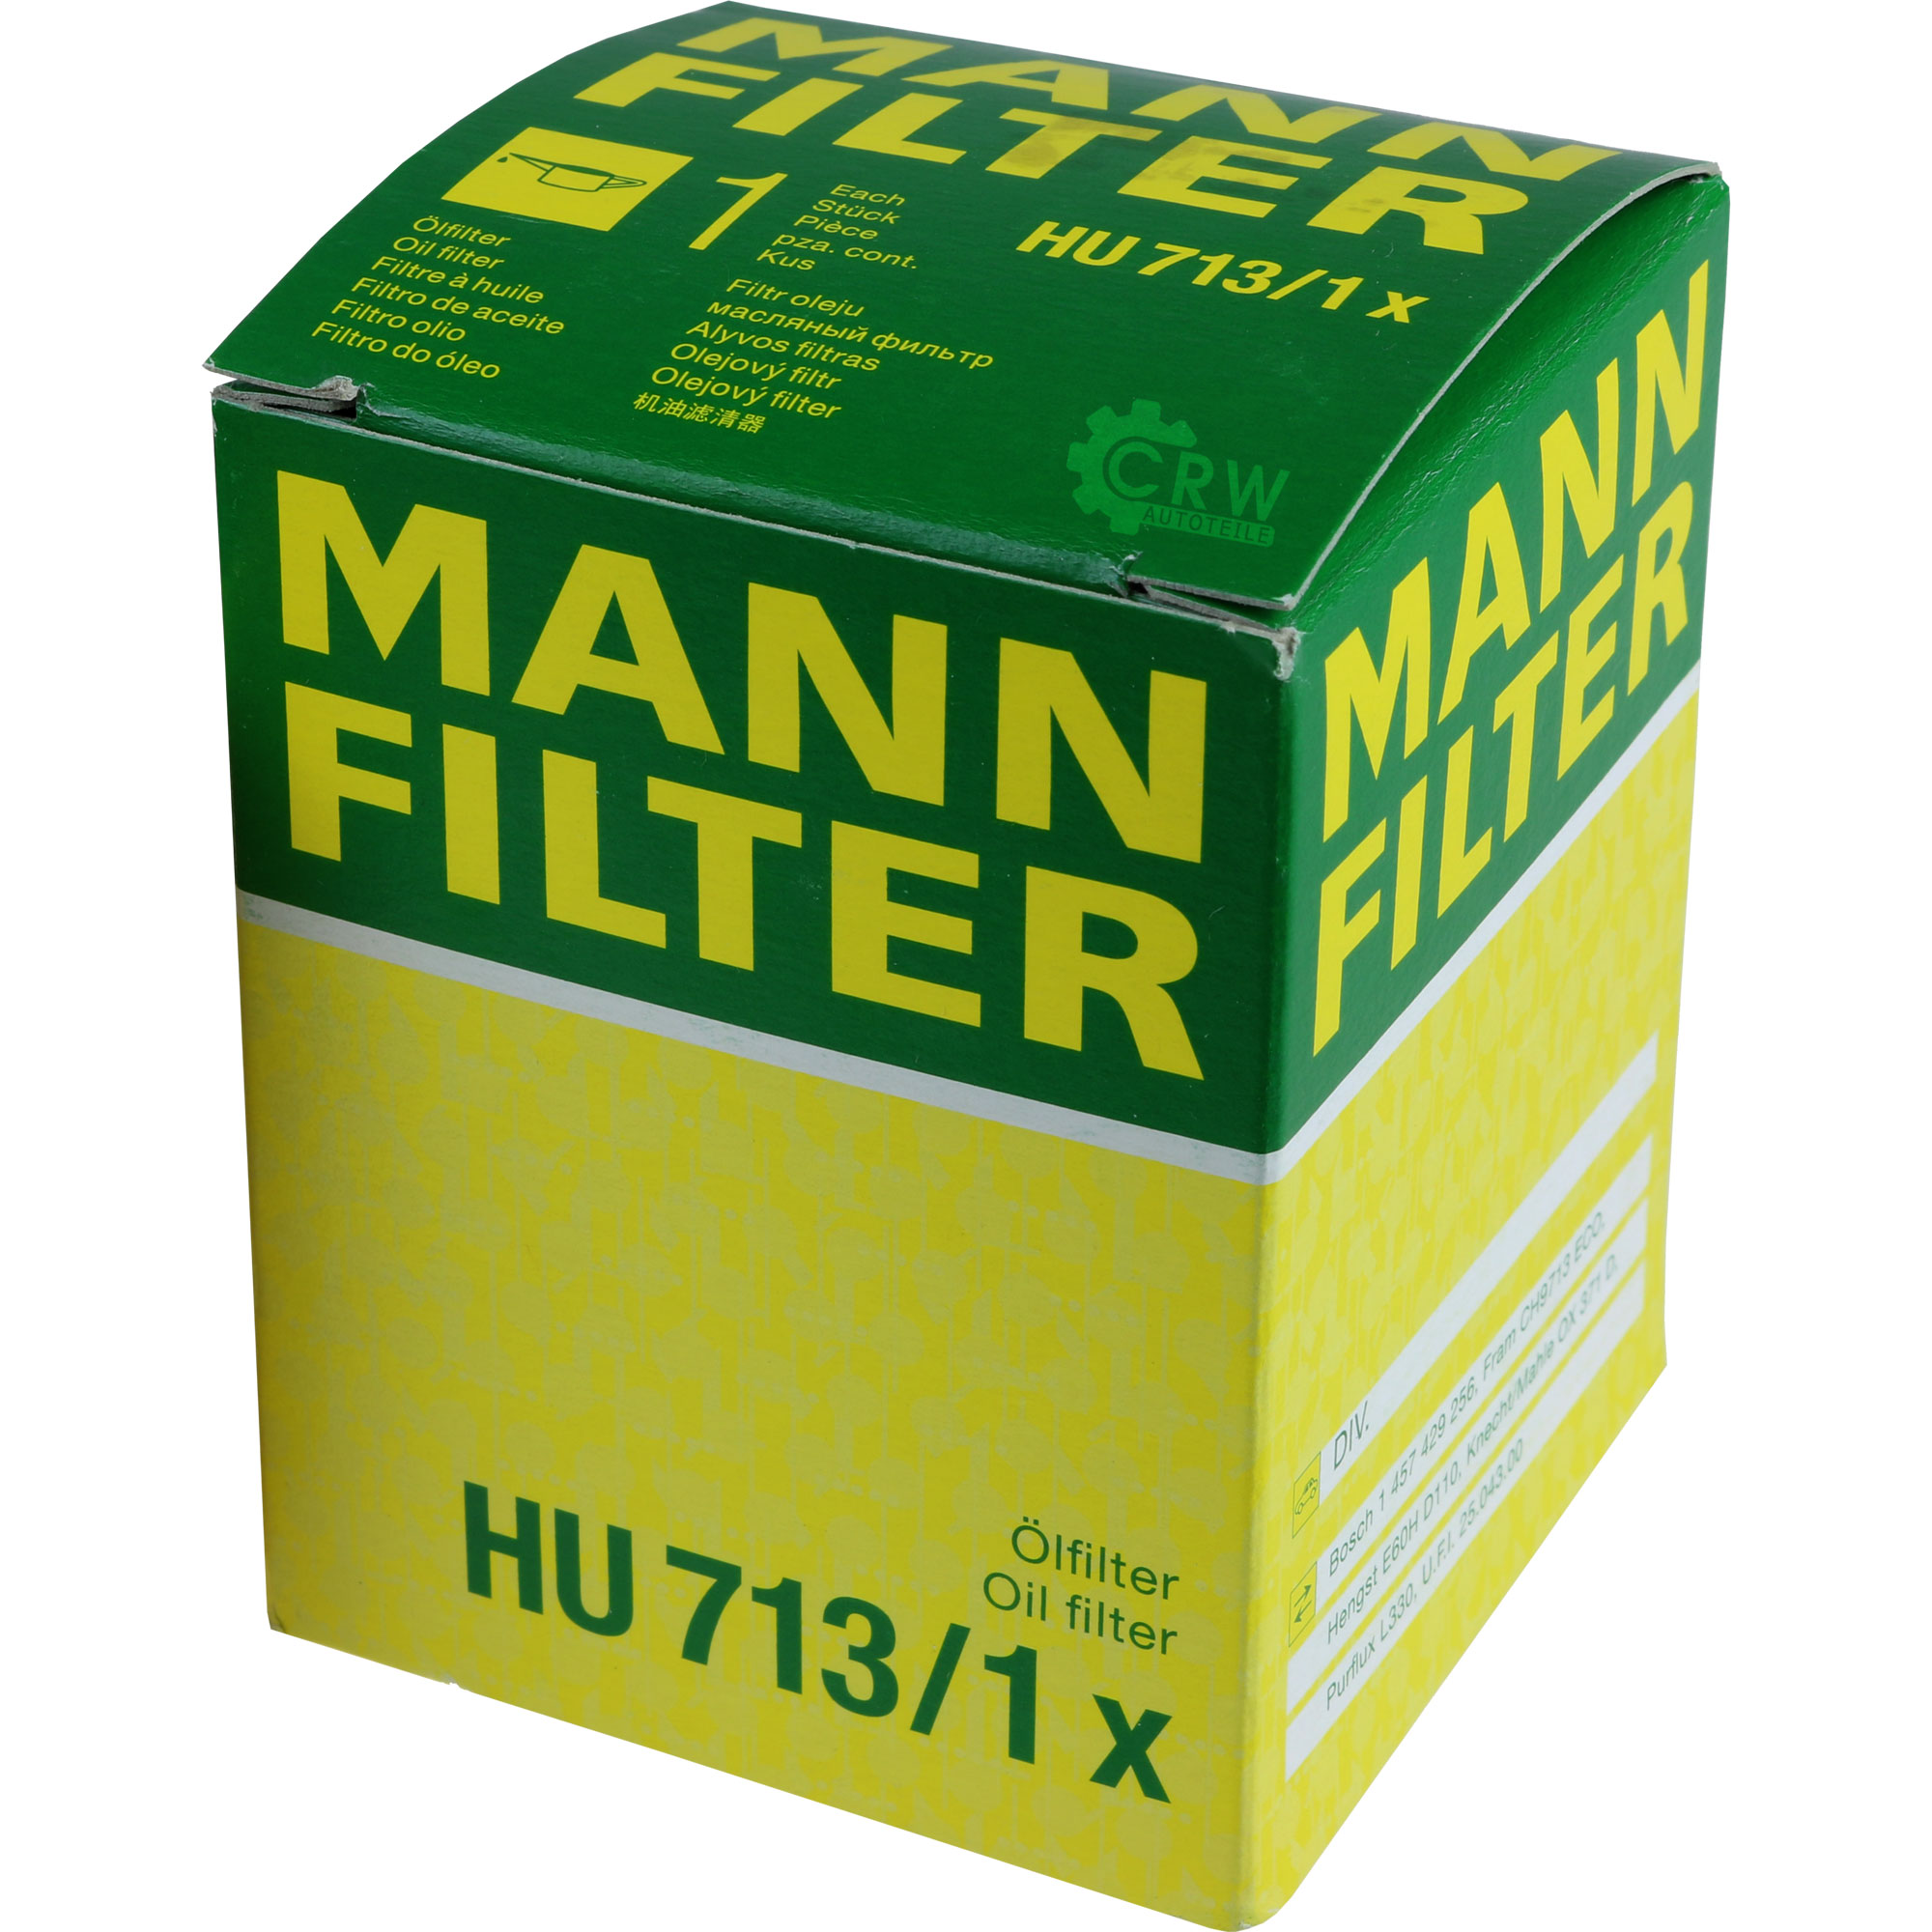 MANN-FILTER Ölfilter HU 713/1 x Oil Filter